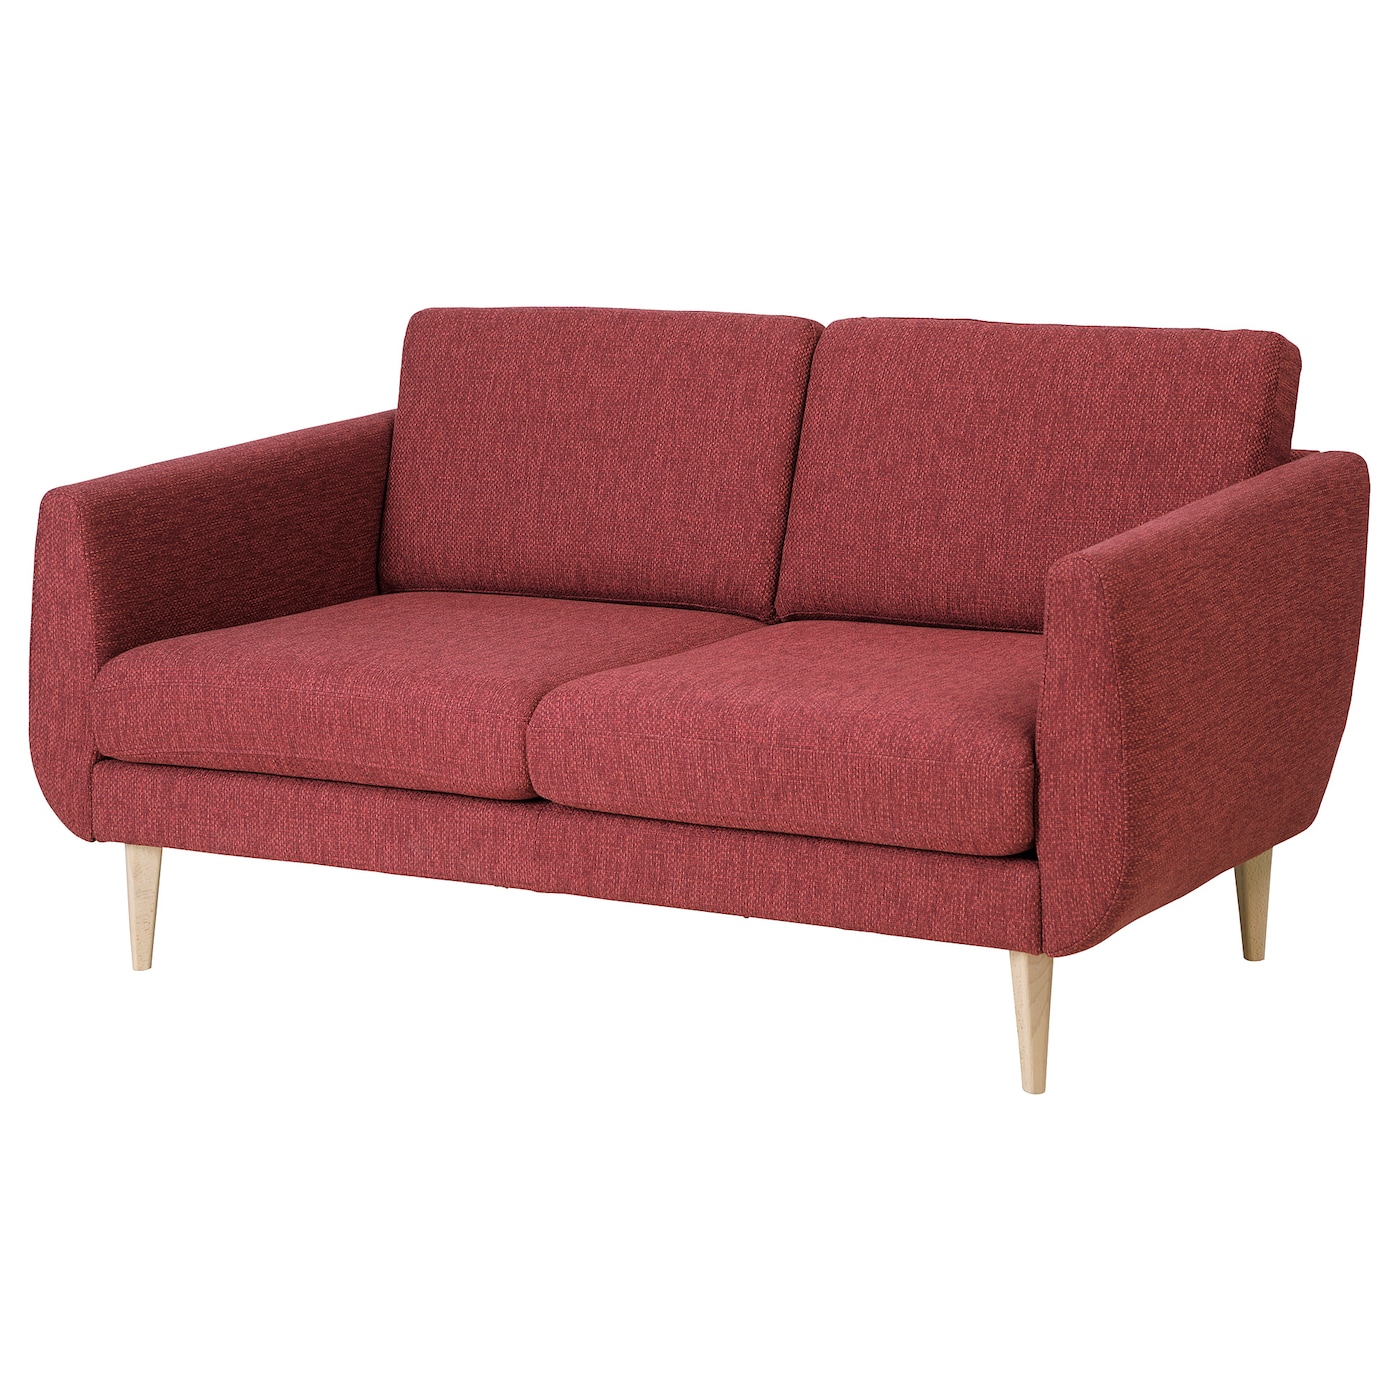 СМЕДСТОРП 2-местный диван, Лейде/красный/коричневый дуб SMEDSTORP IKEA диван офисный шарм дизайн бит с подушками коричневый